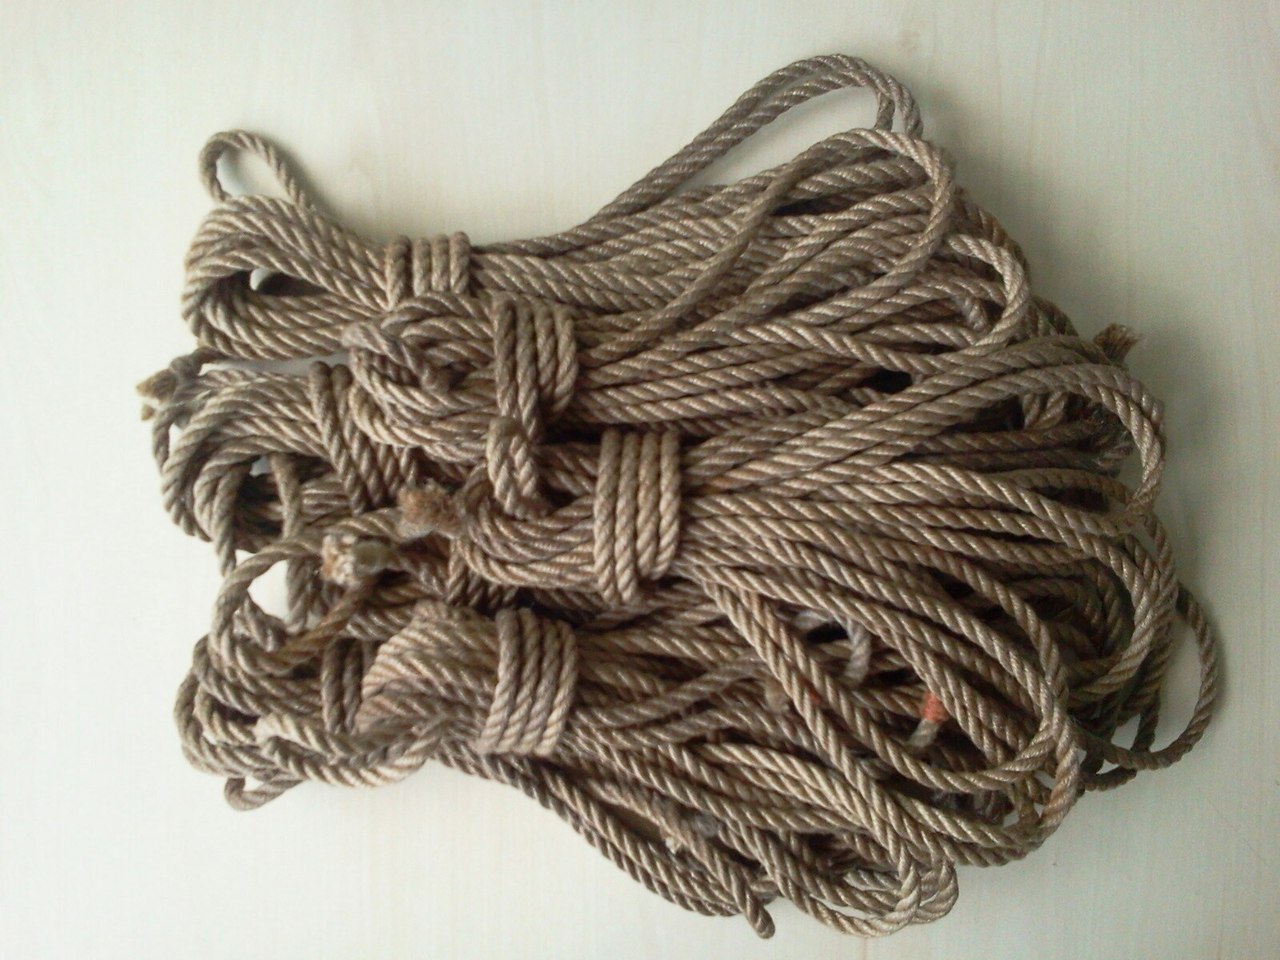 БДСМ веревка, верёвка для бондажа, верёвка для связывания, веревка джутовая, веревка сизалевая, веревка пеньковая